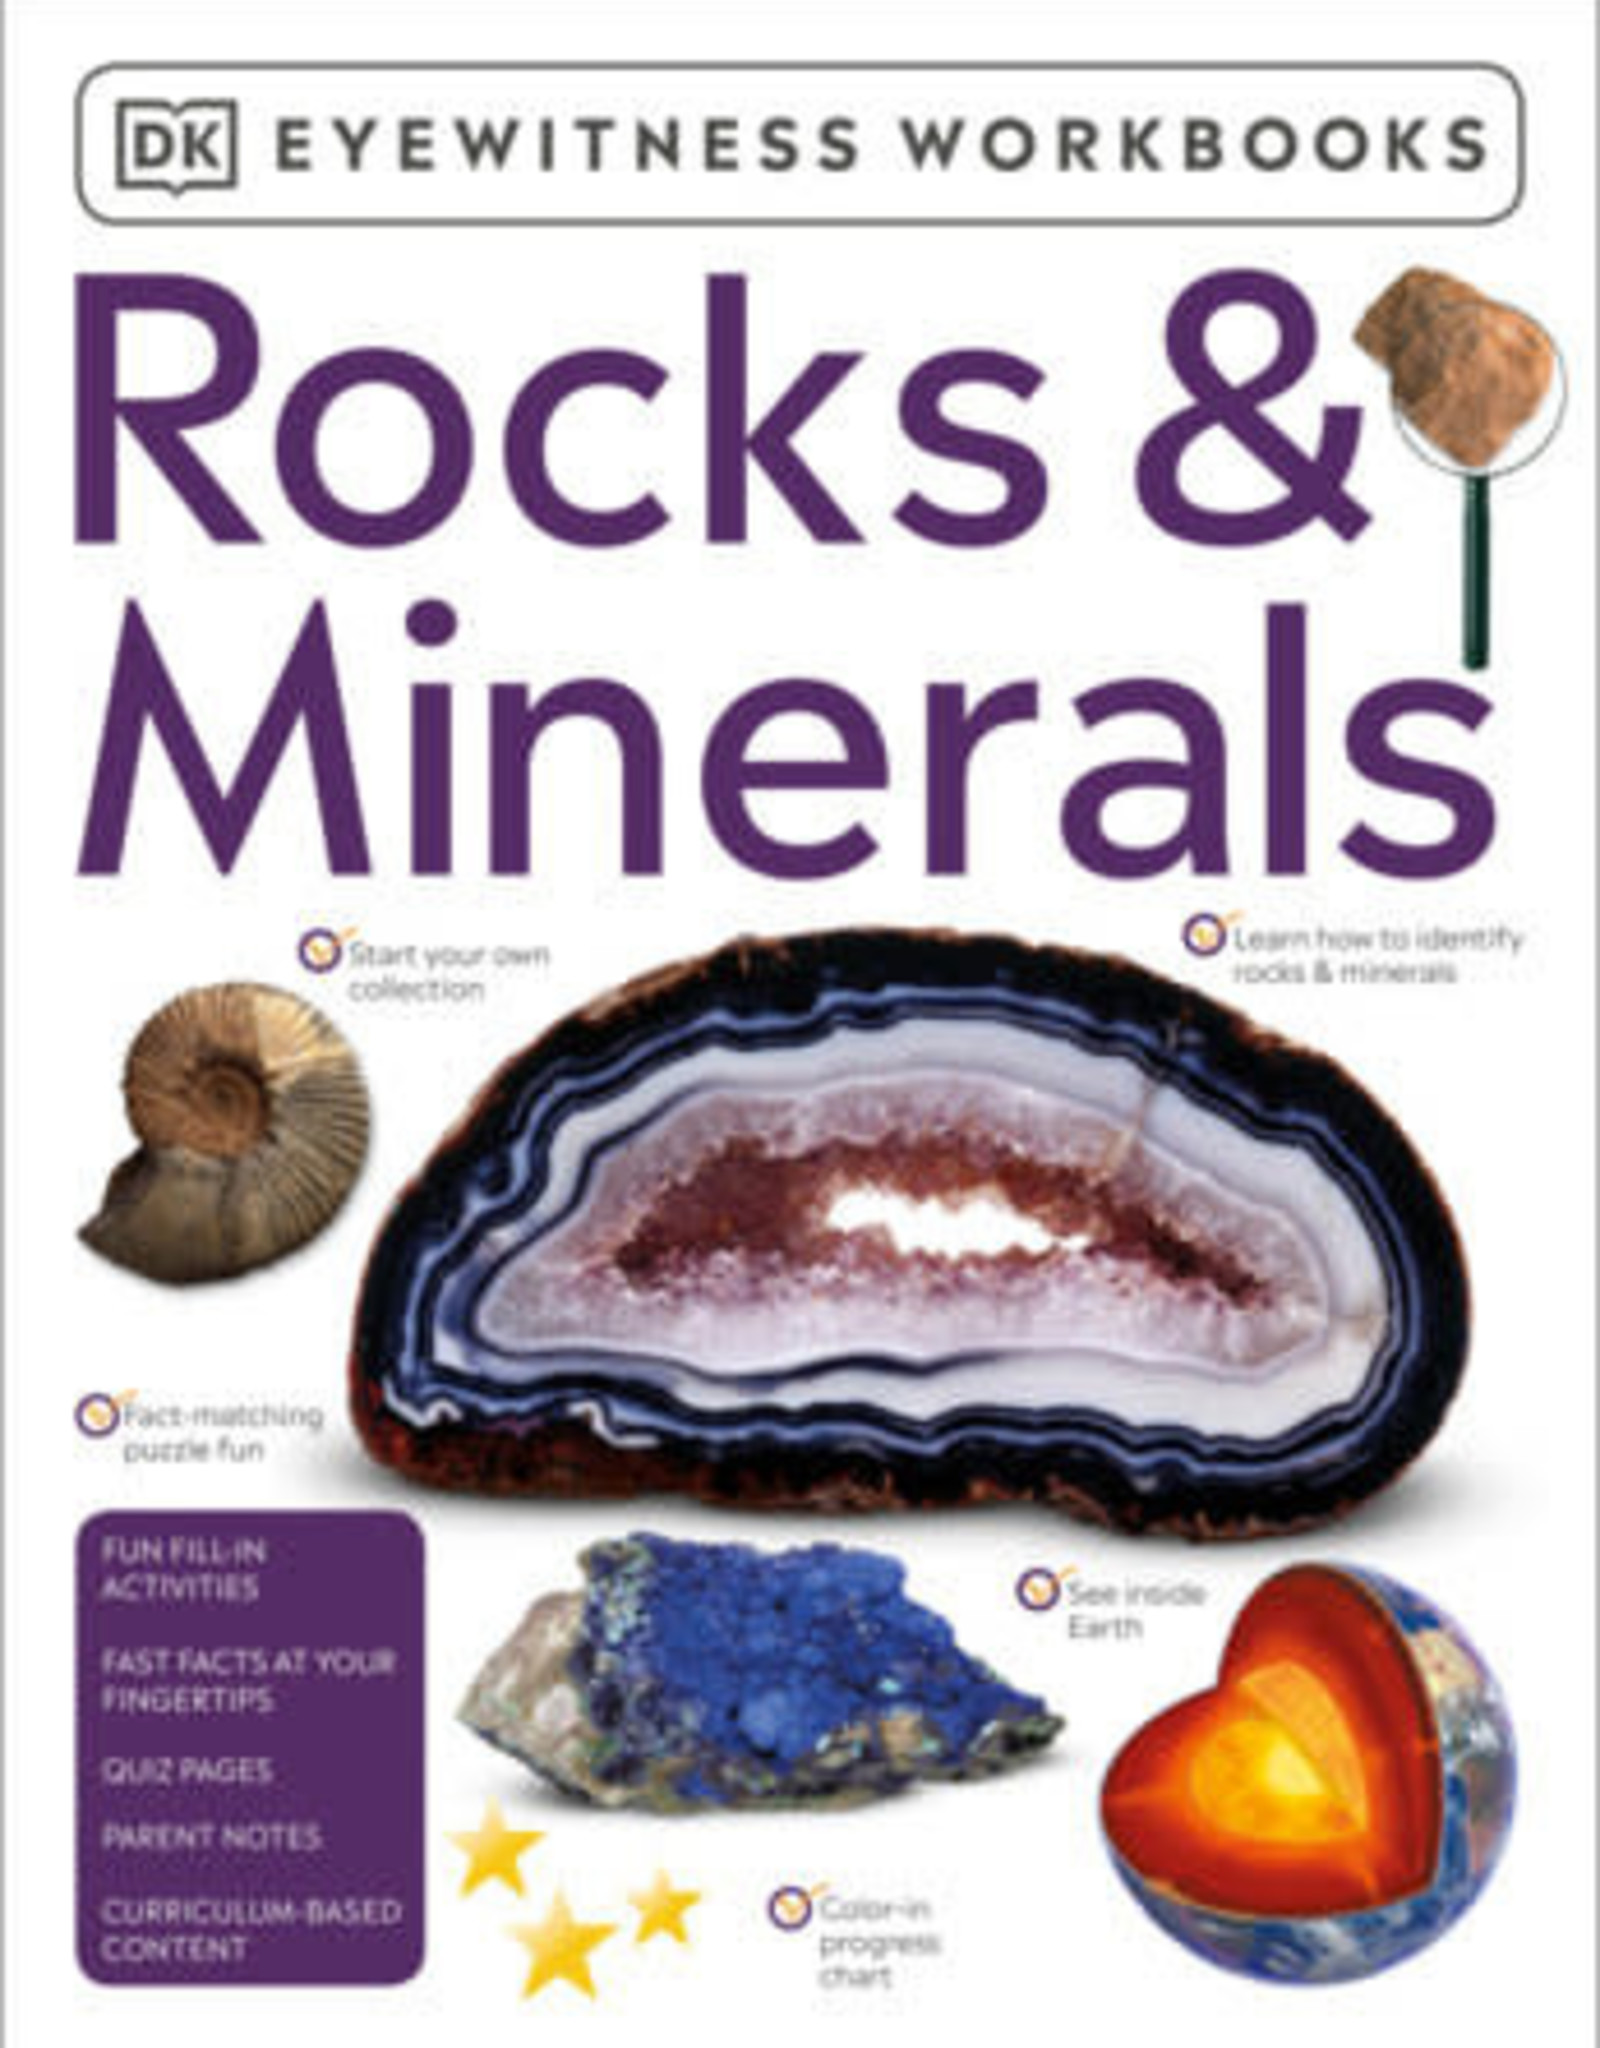 DK Eyewitness Workbooks Rocks and Minerals